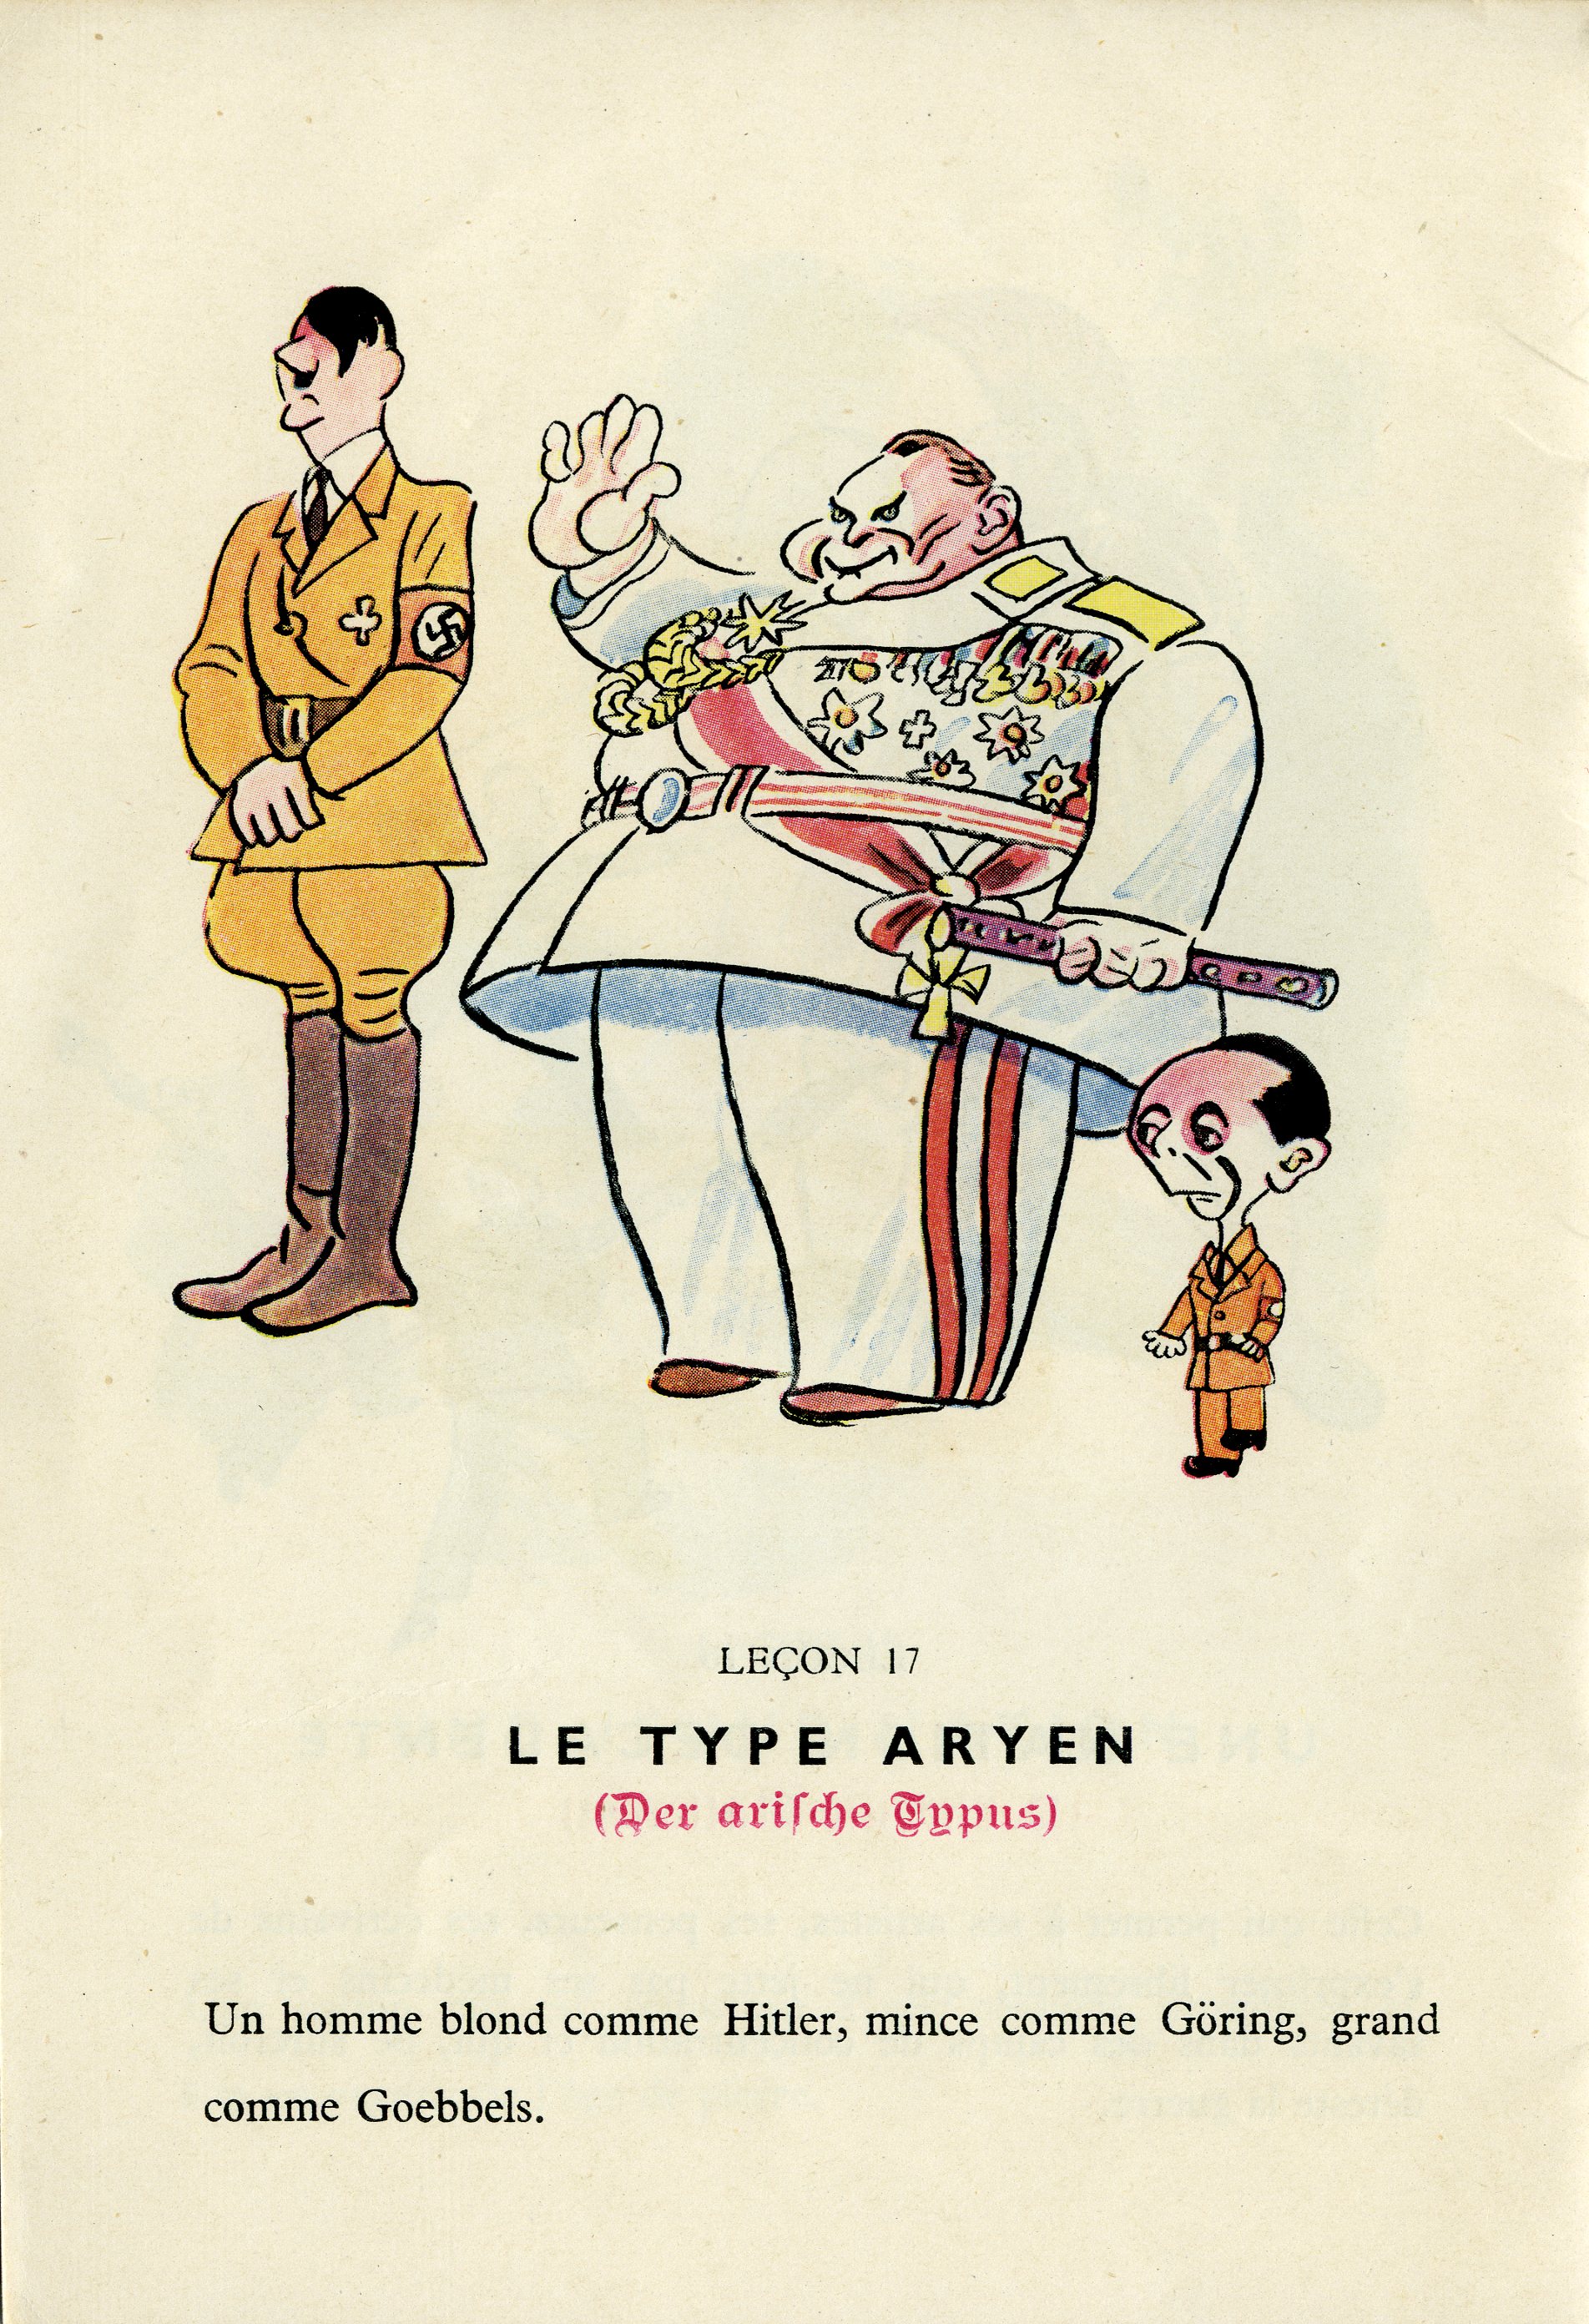 Vignetta francese, realizzata per contestare la politica razziale del nazismo. Il 